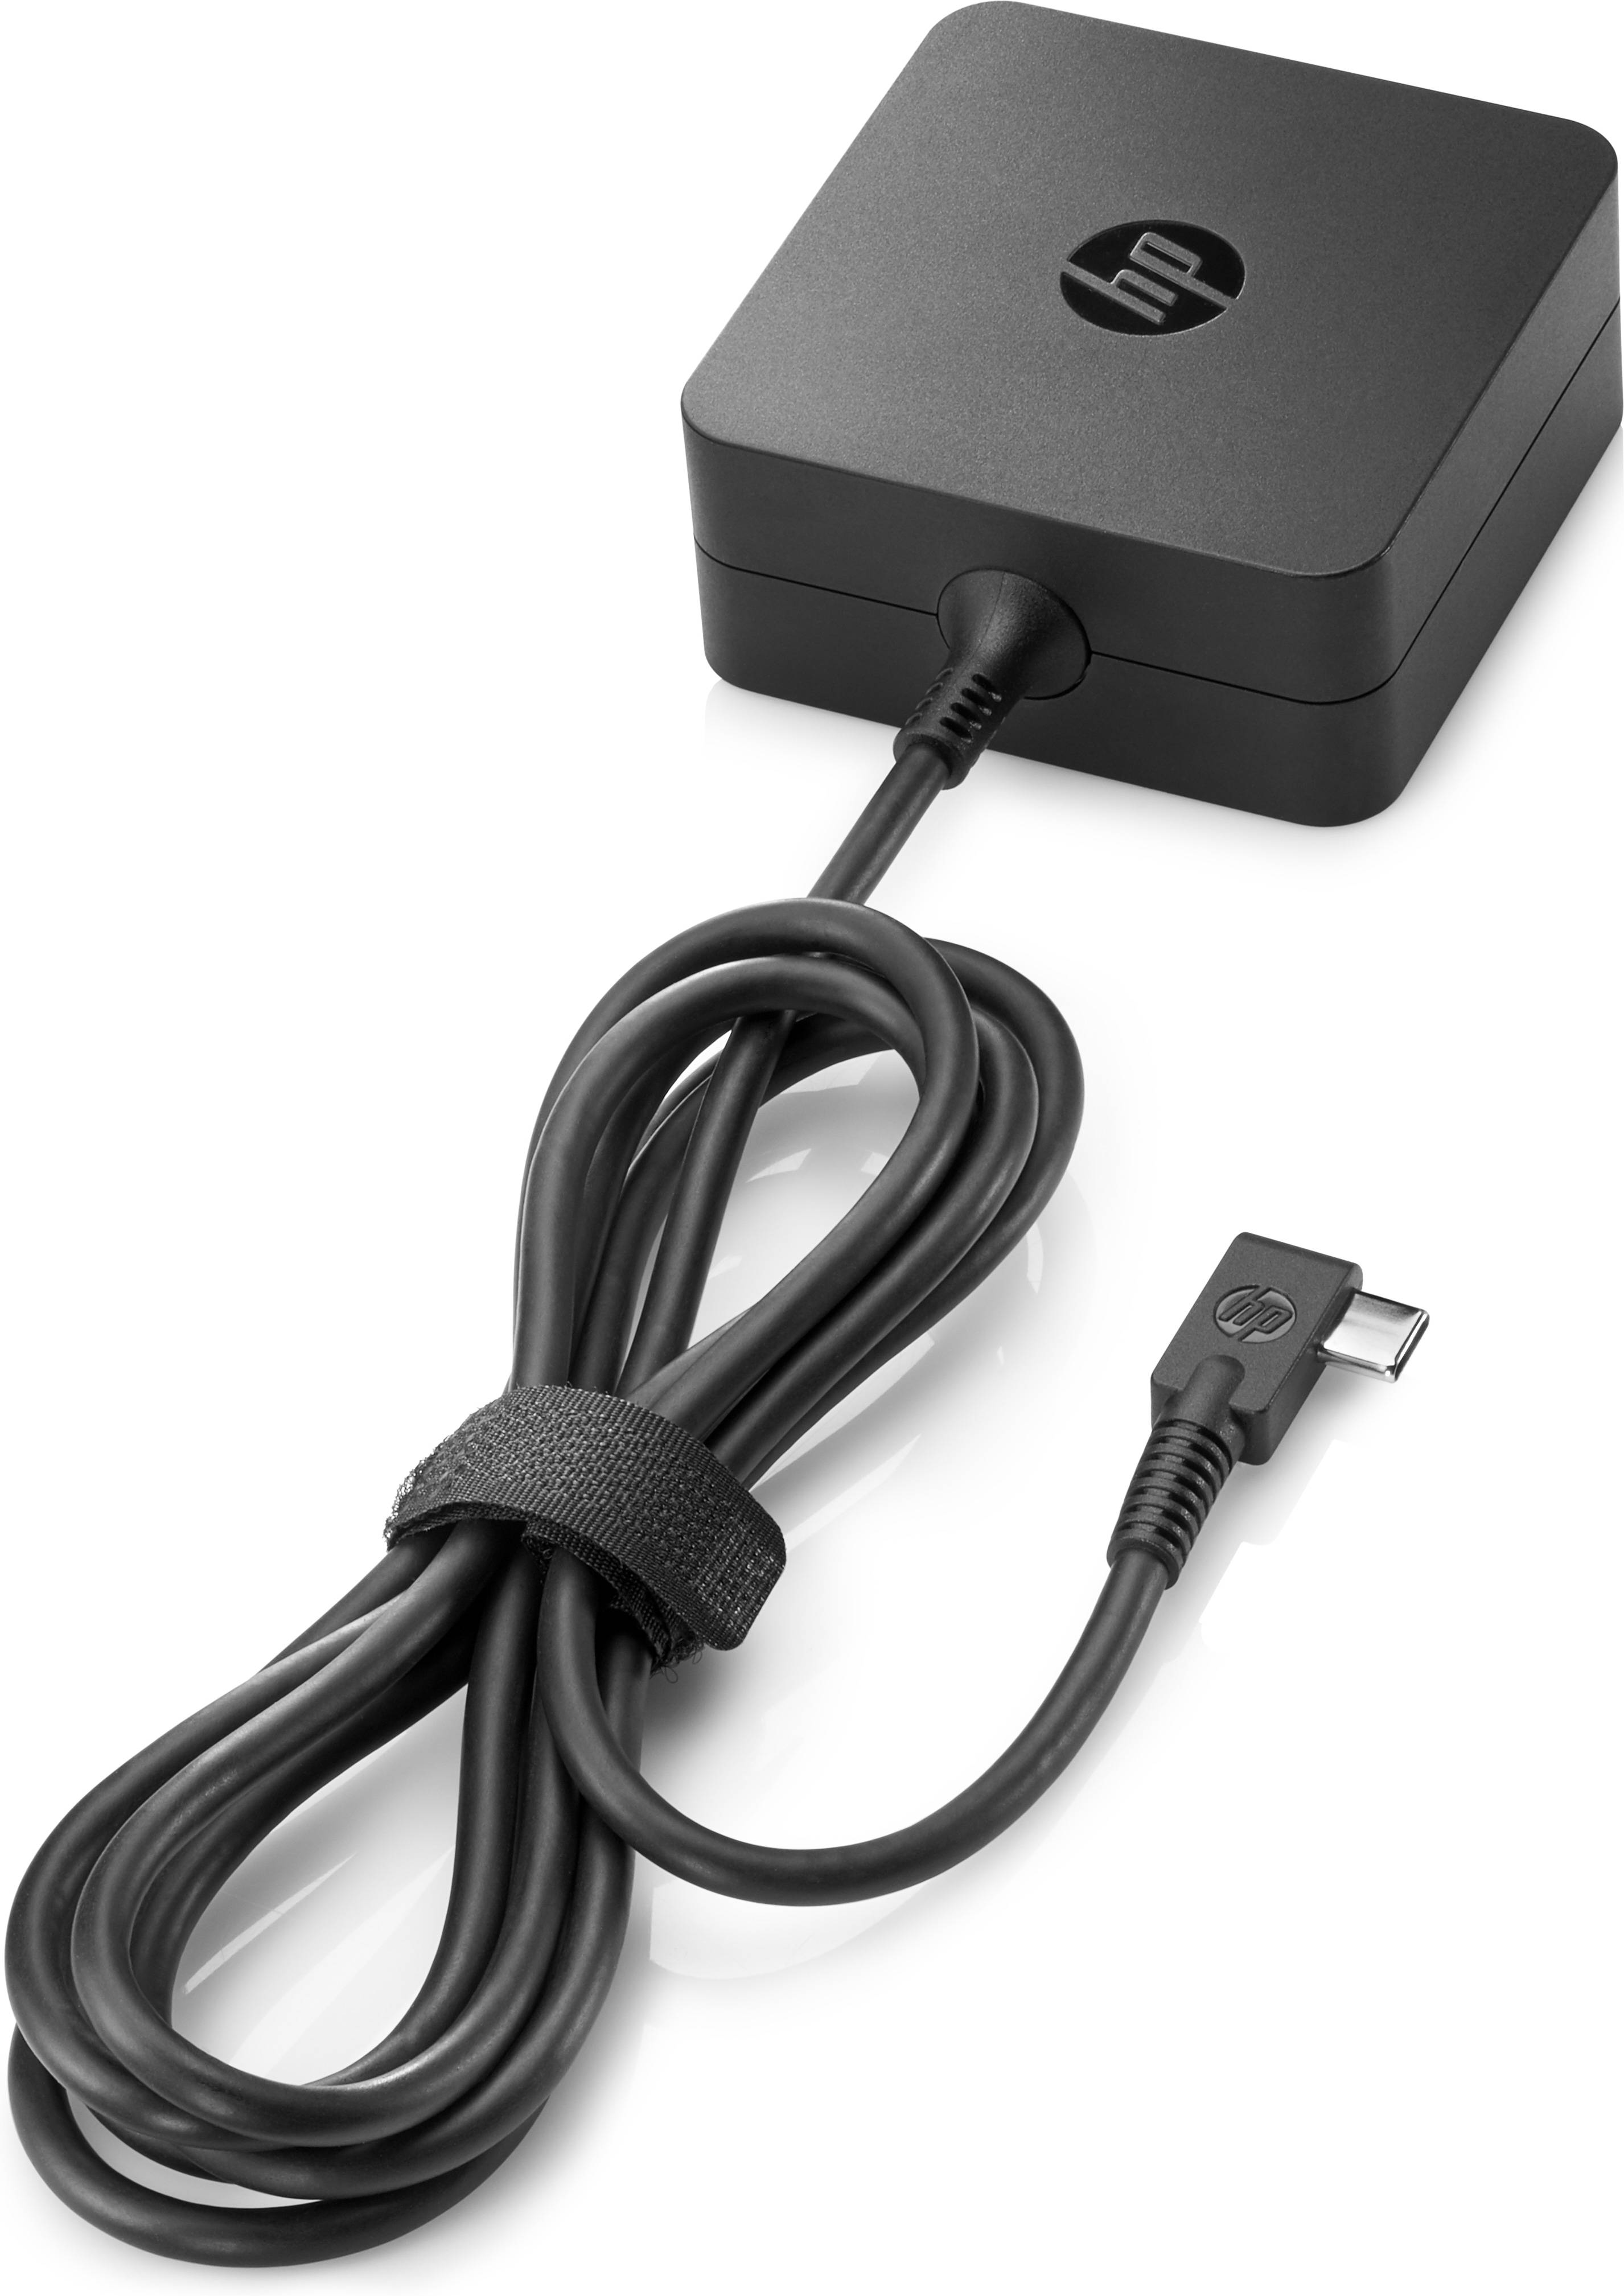 Rca Informatique - Image du produit : 45W USB-C G2 POWER ADAPTER .